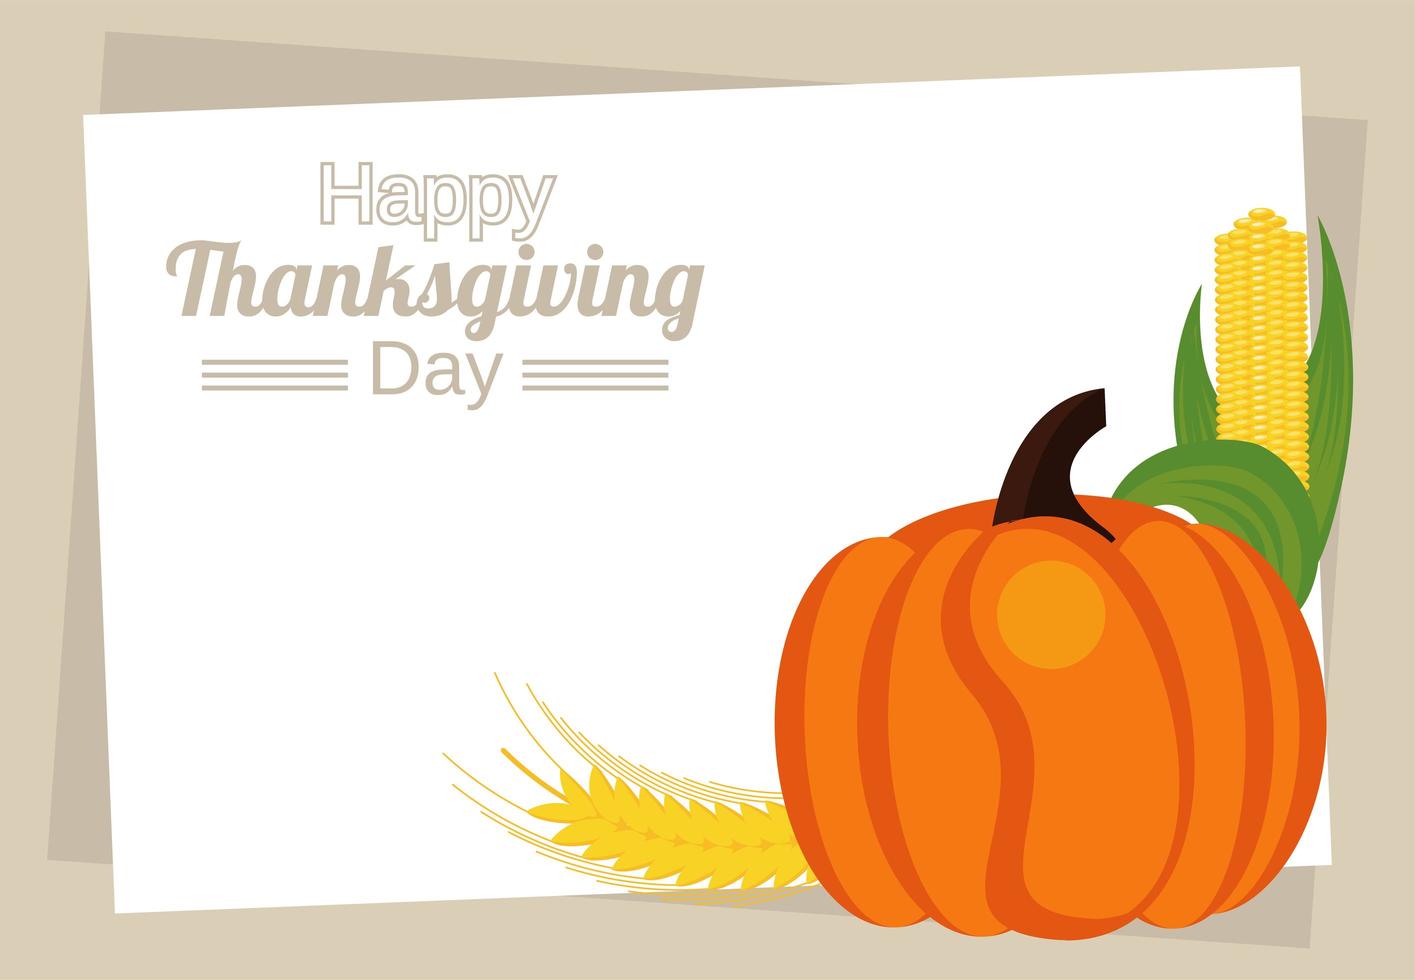 Happy Thanksgiving Day Schriftzug mit Kürbis und Maiskolben vektor